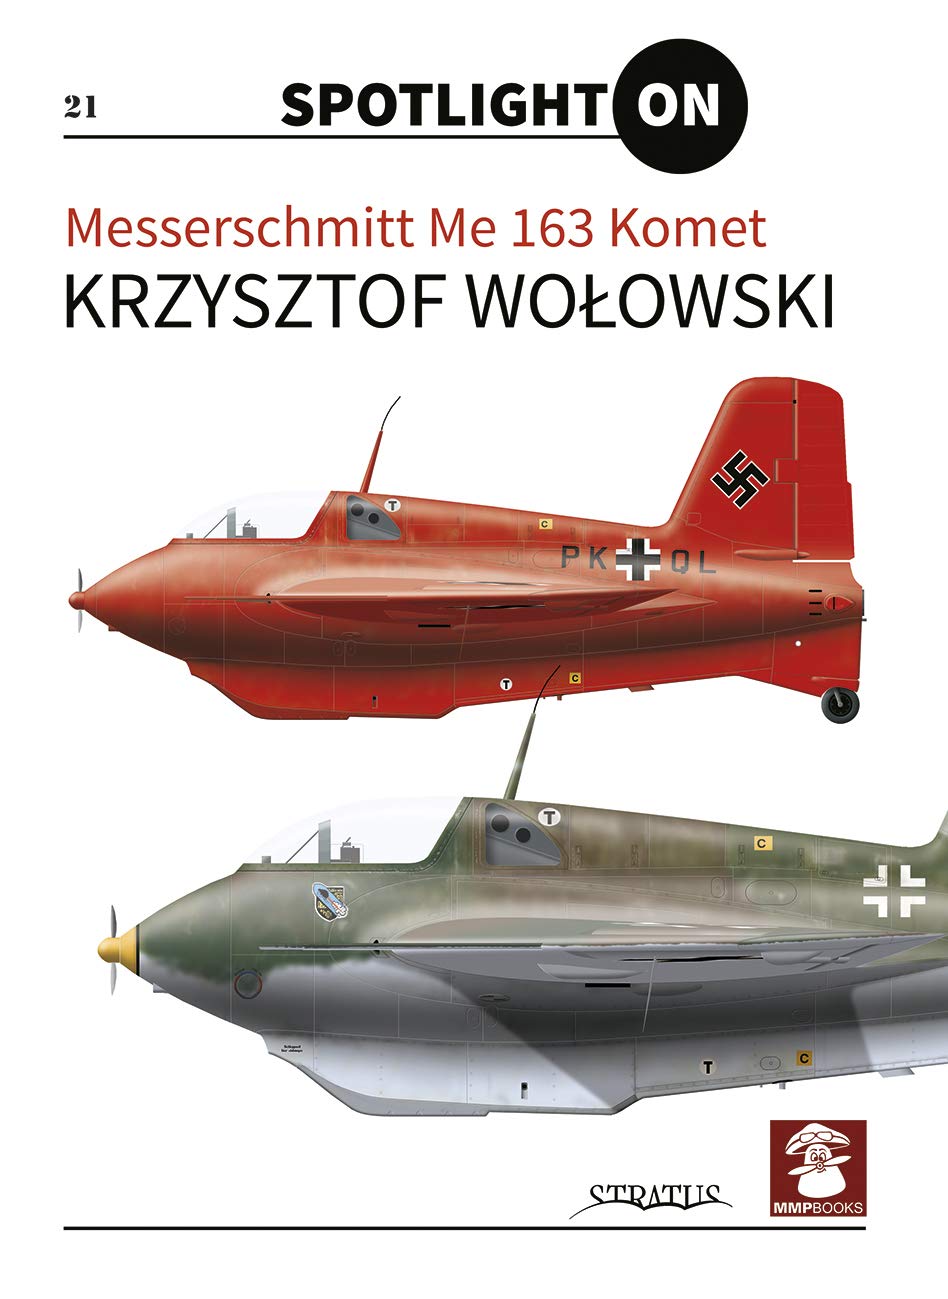 Messerschmitt Me 163 Komet Wallpapers